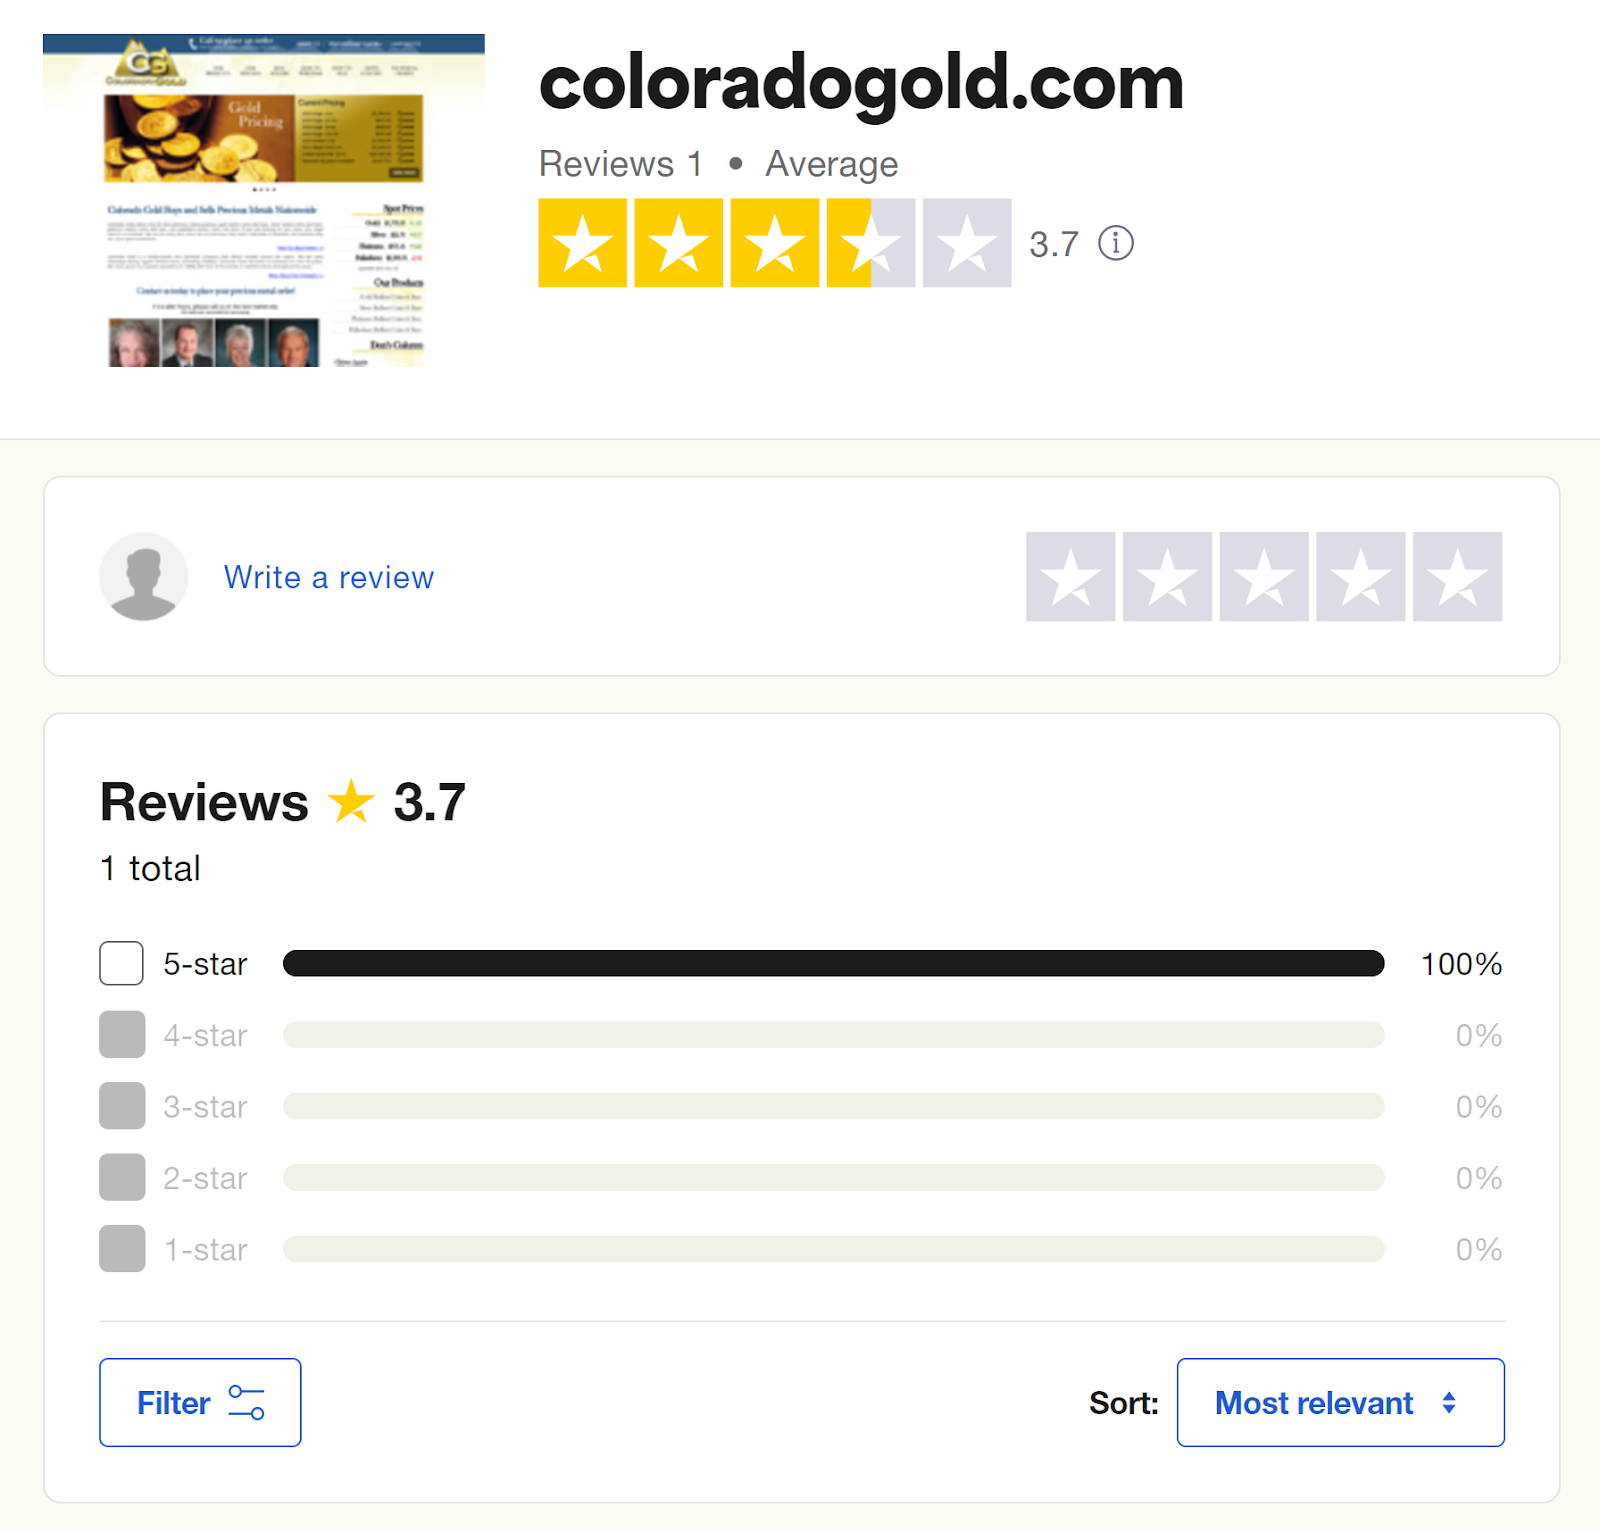 Colorado Gold reviews